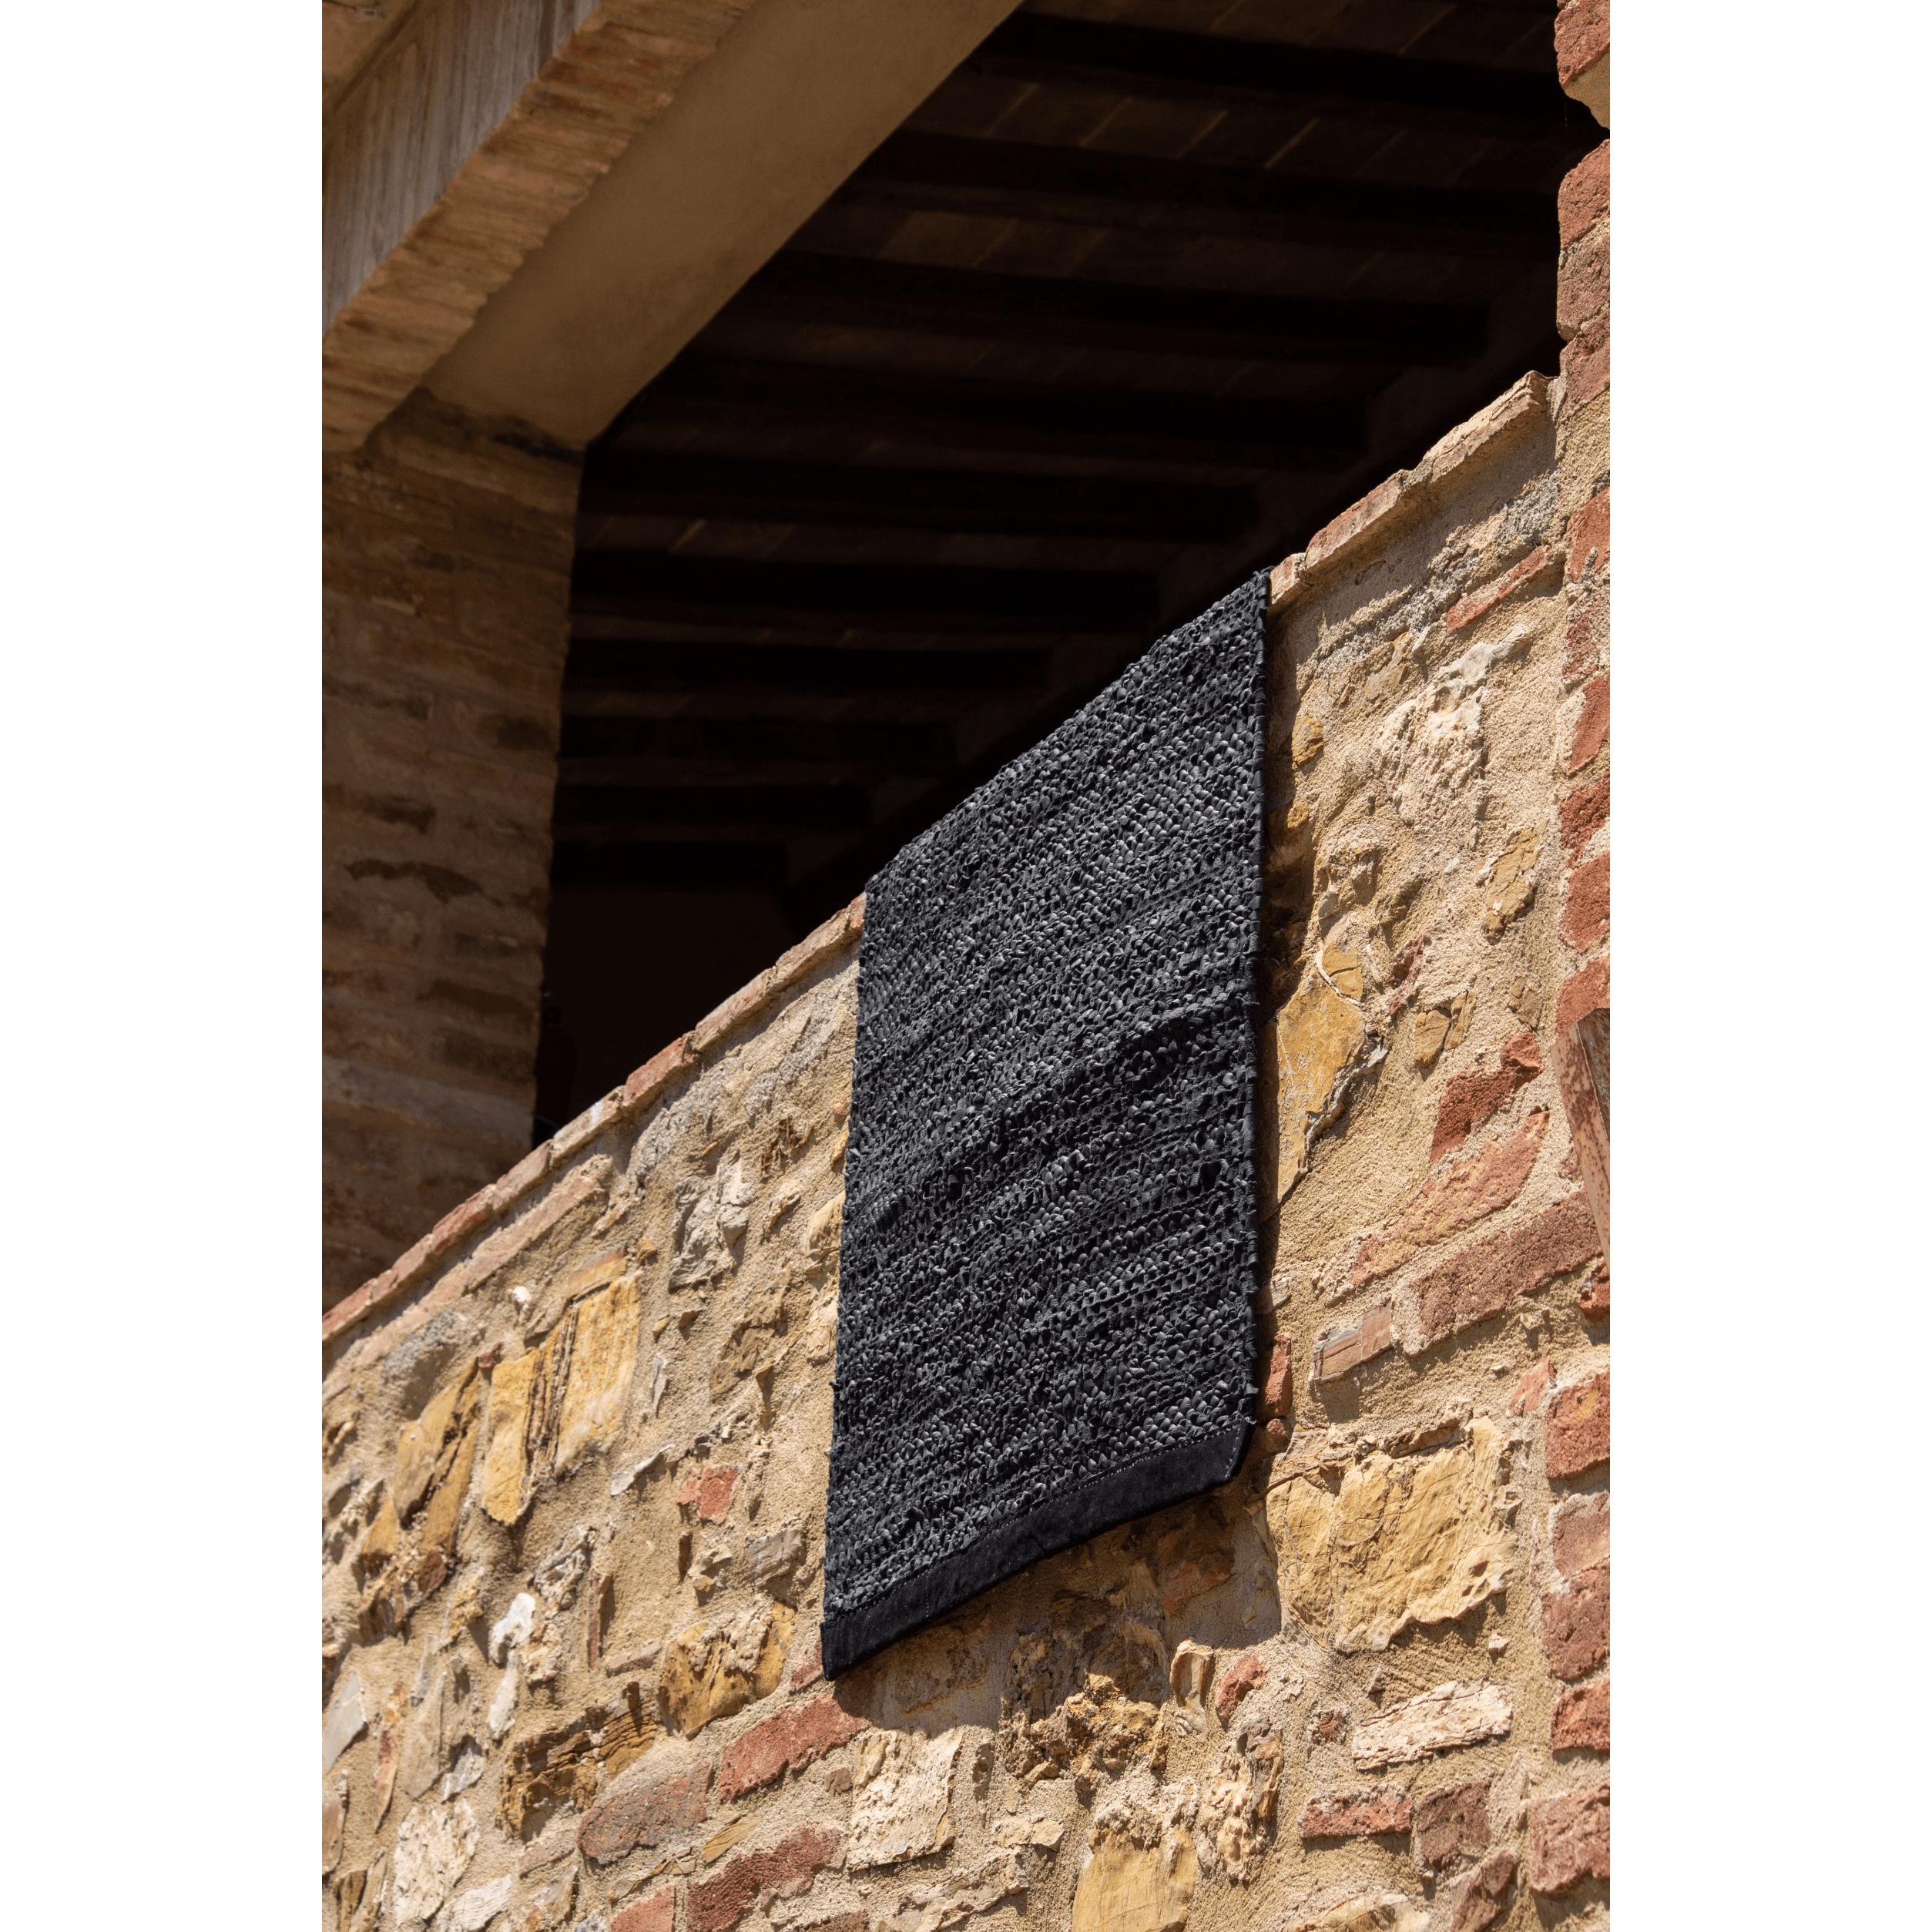 Koberec s pevným koženým koberec černý, 170 x 240 cm